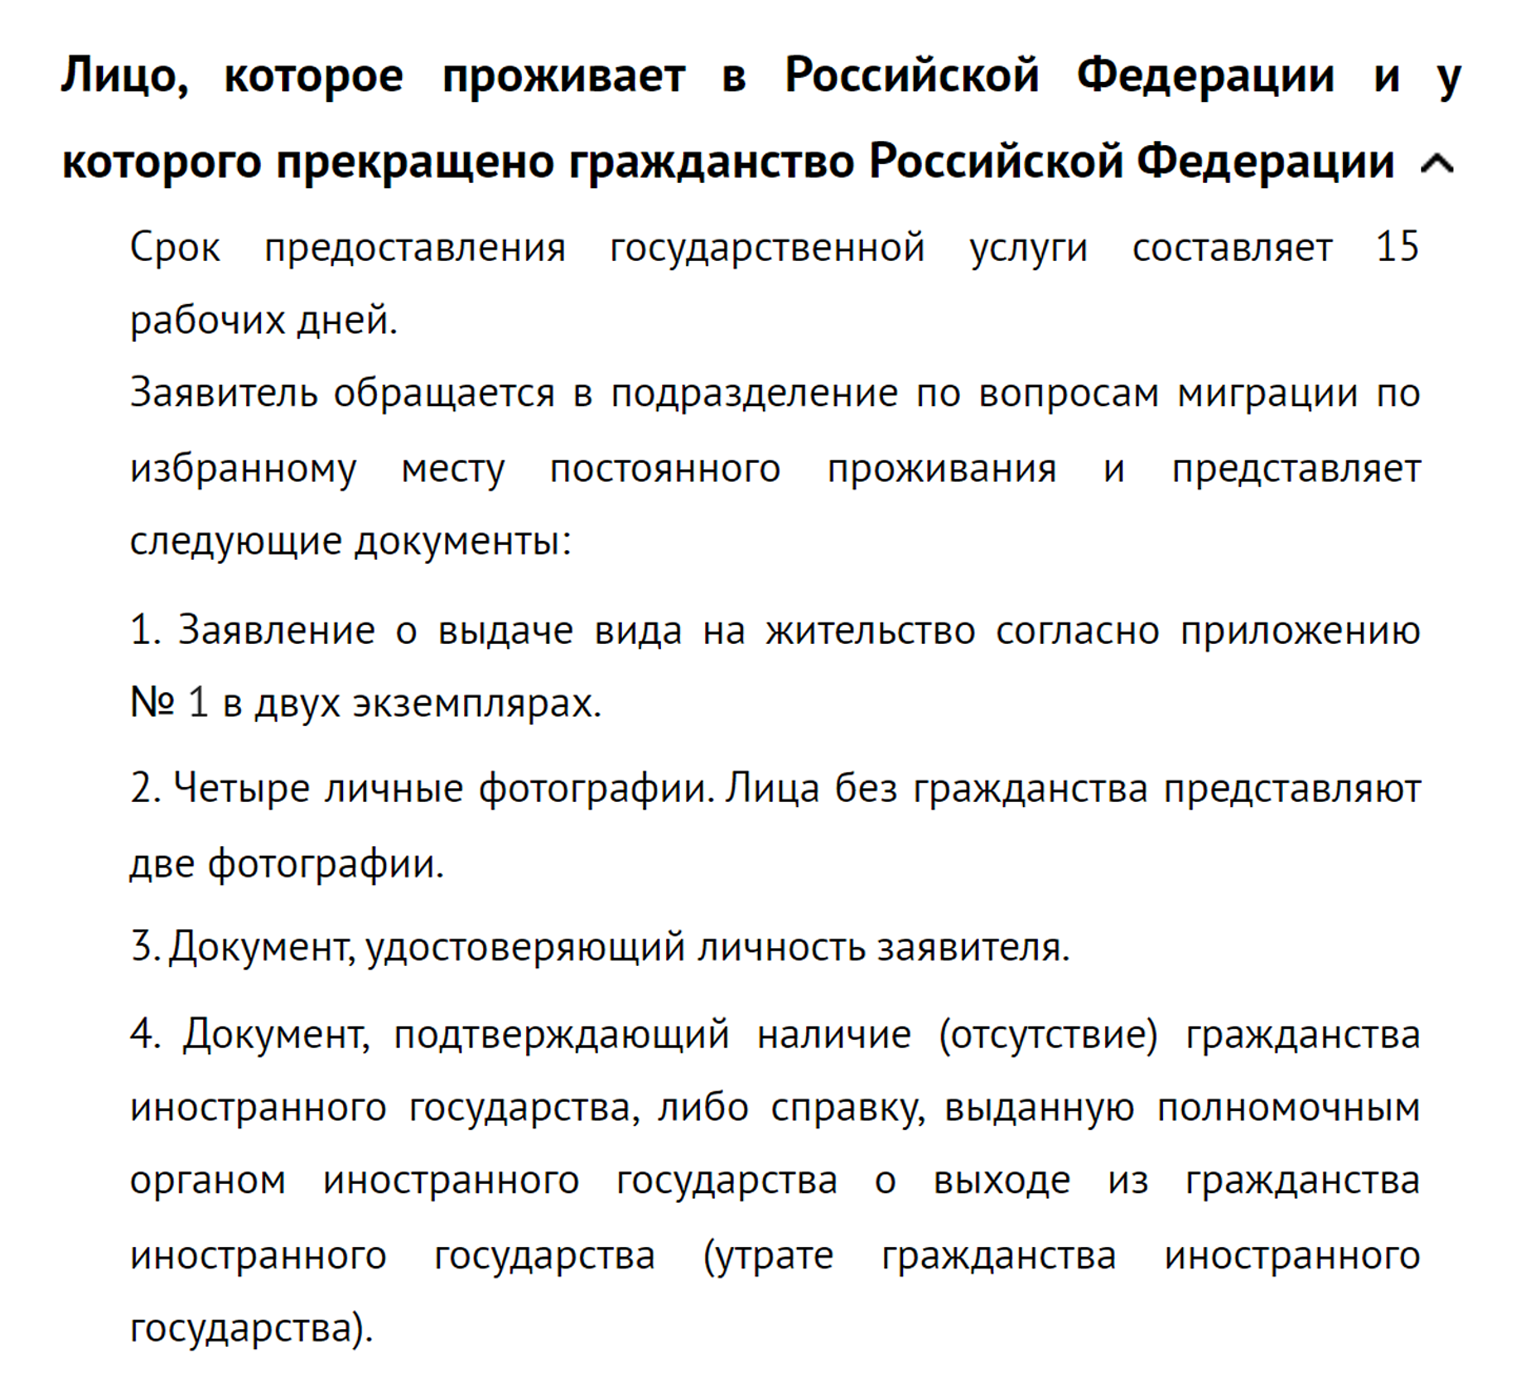 Общая информация о перечне документов на официальном сайте МВД РФ